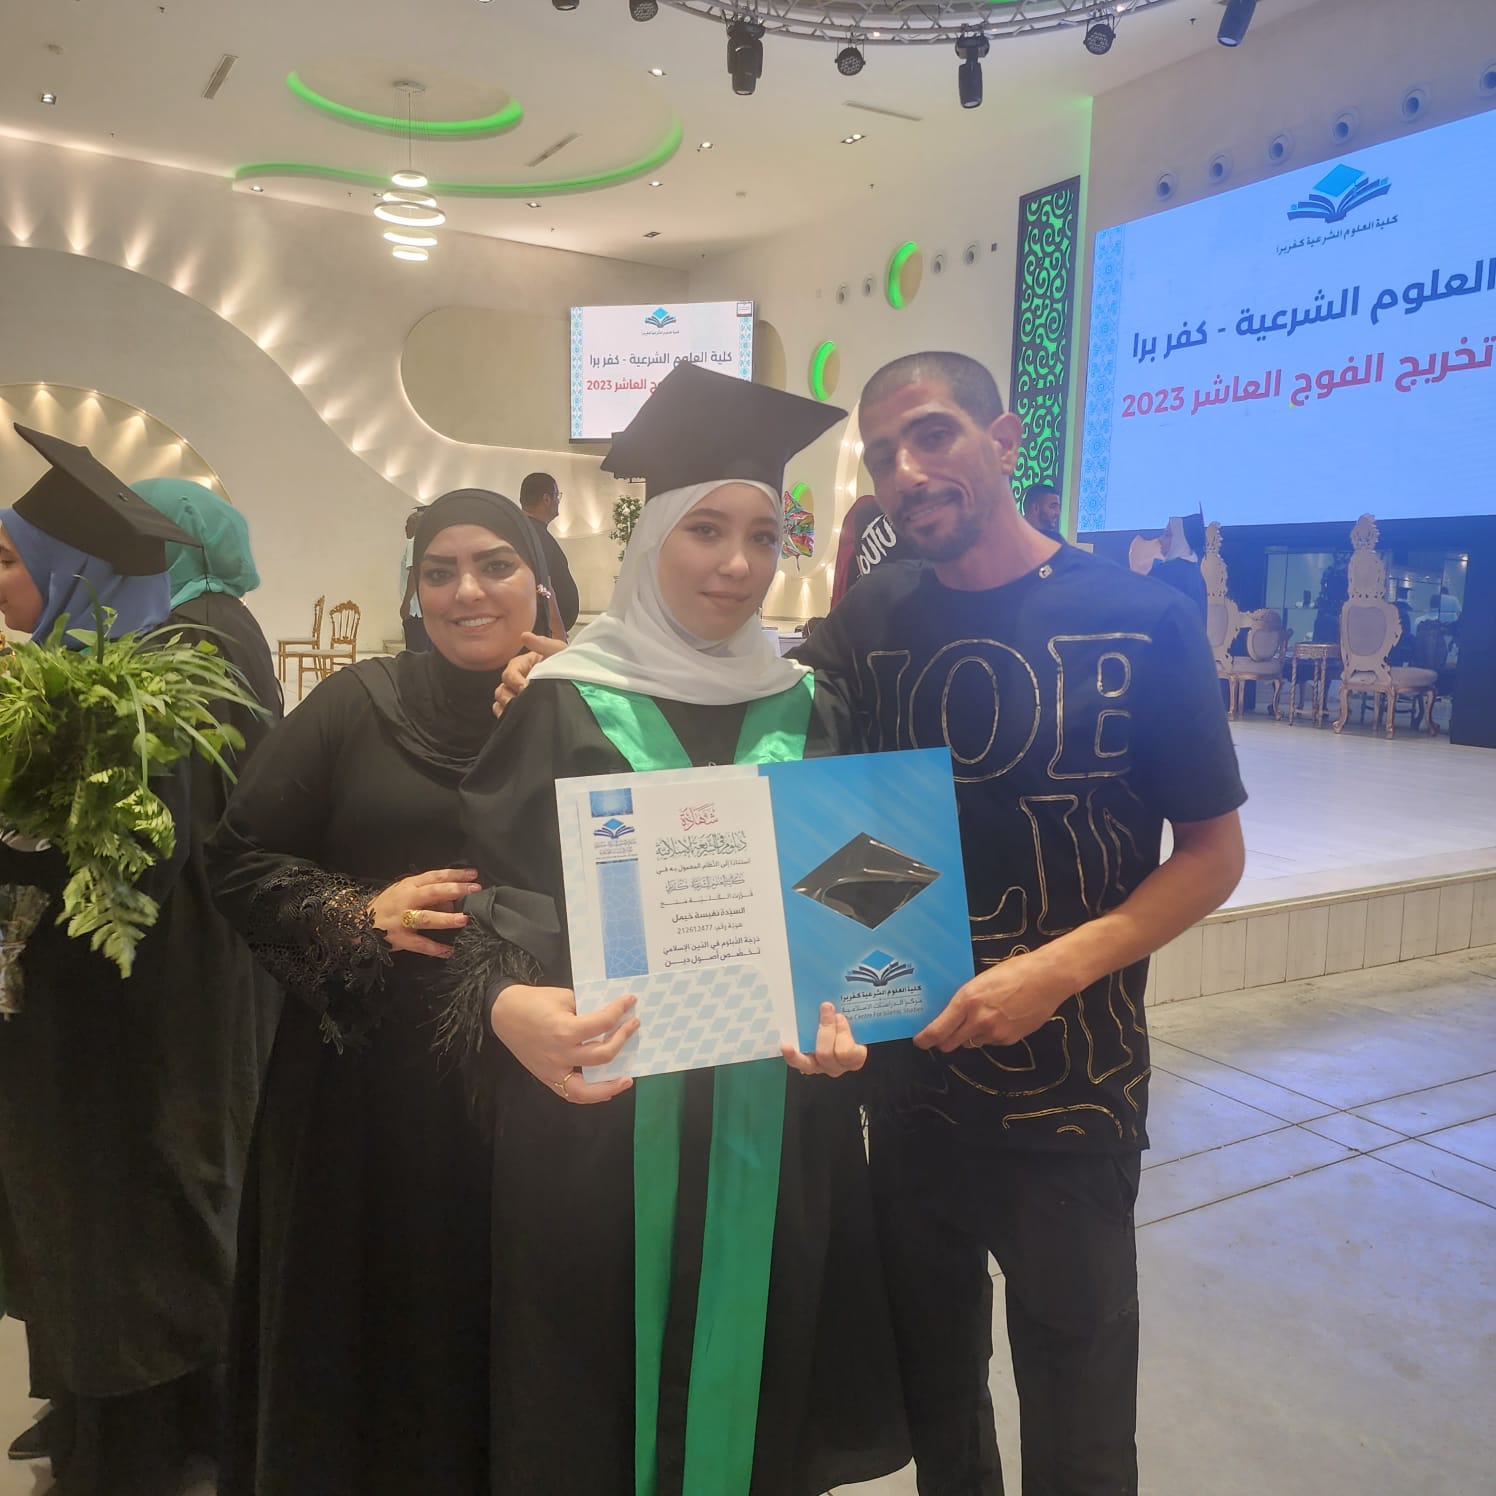  تهنئة للطالبة نفيسة خيمل بمناسبة تخرجها من كلية العلوم الشرعية كفربرا